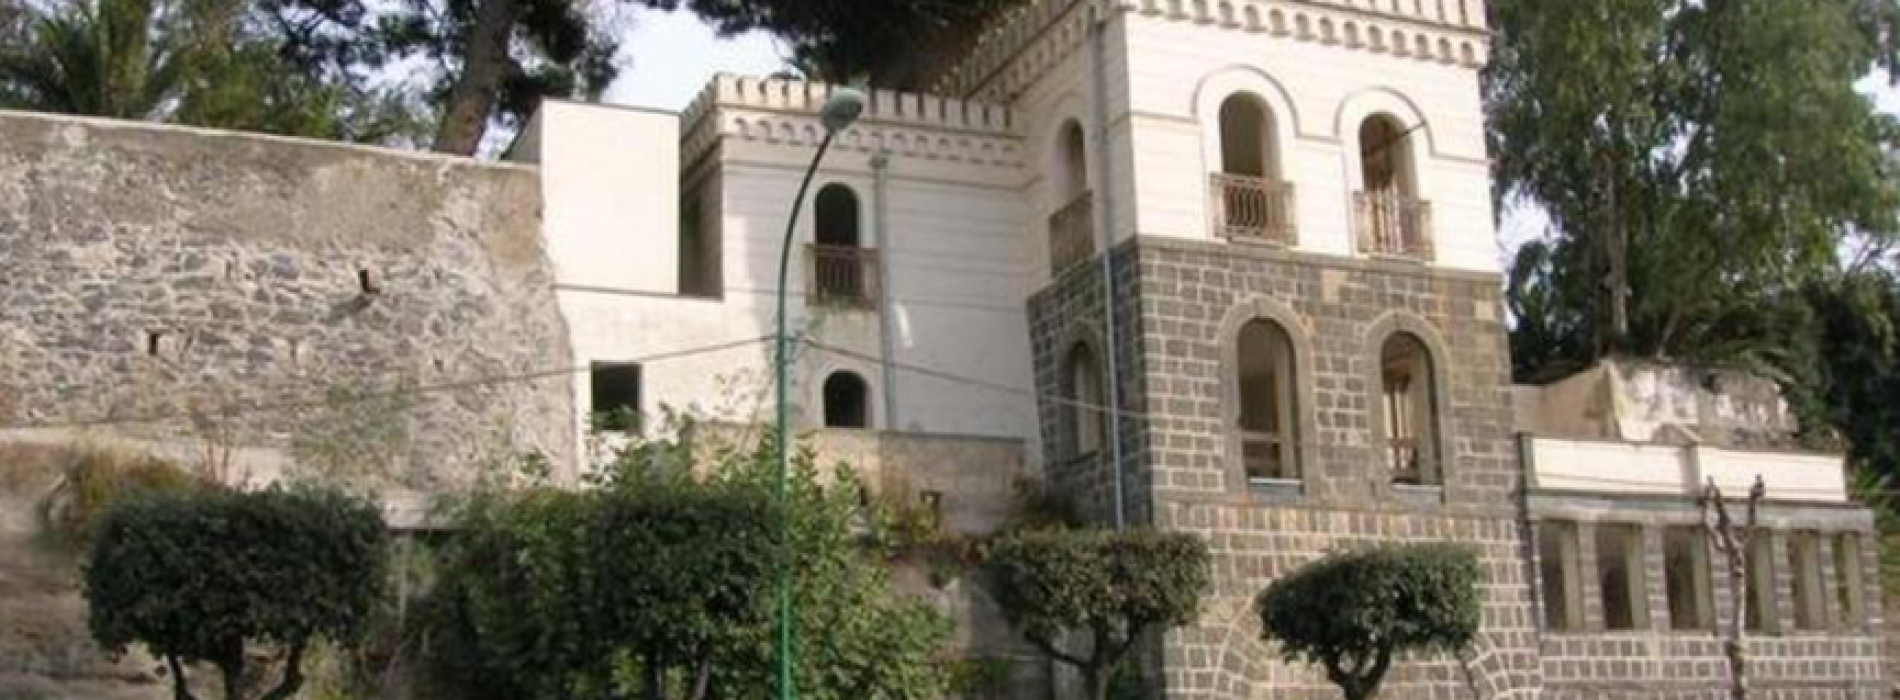 Villa del Parnaso risorge dal degrado a Torre Annunziata